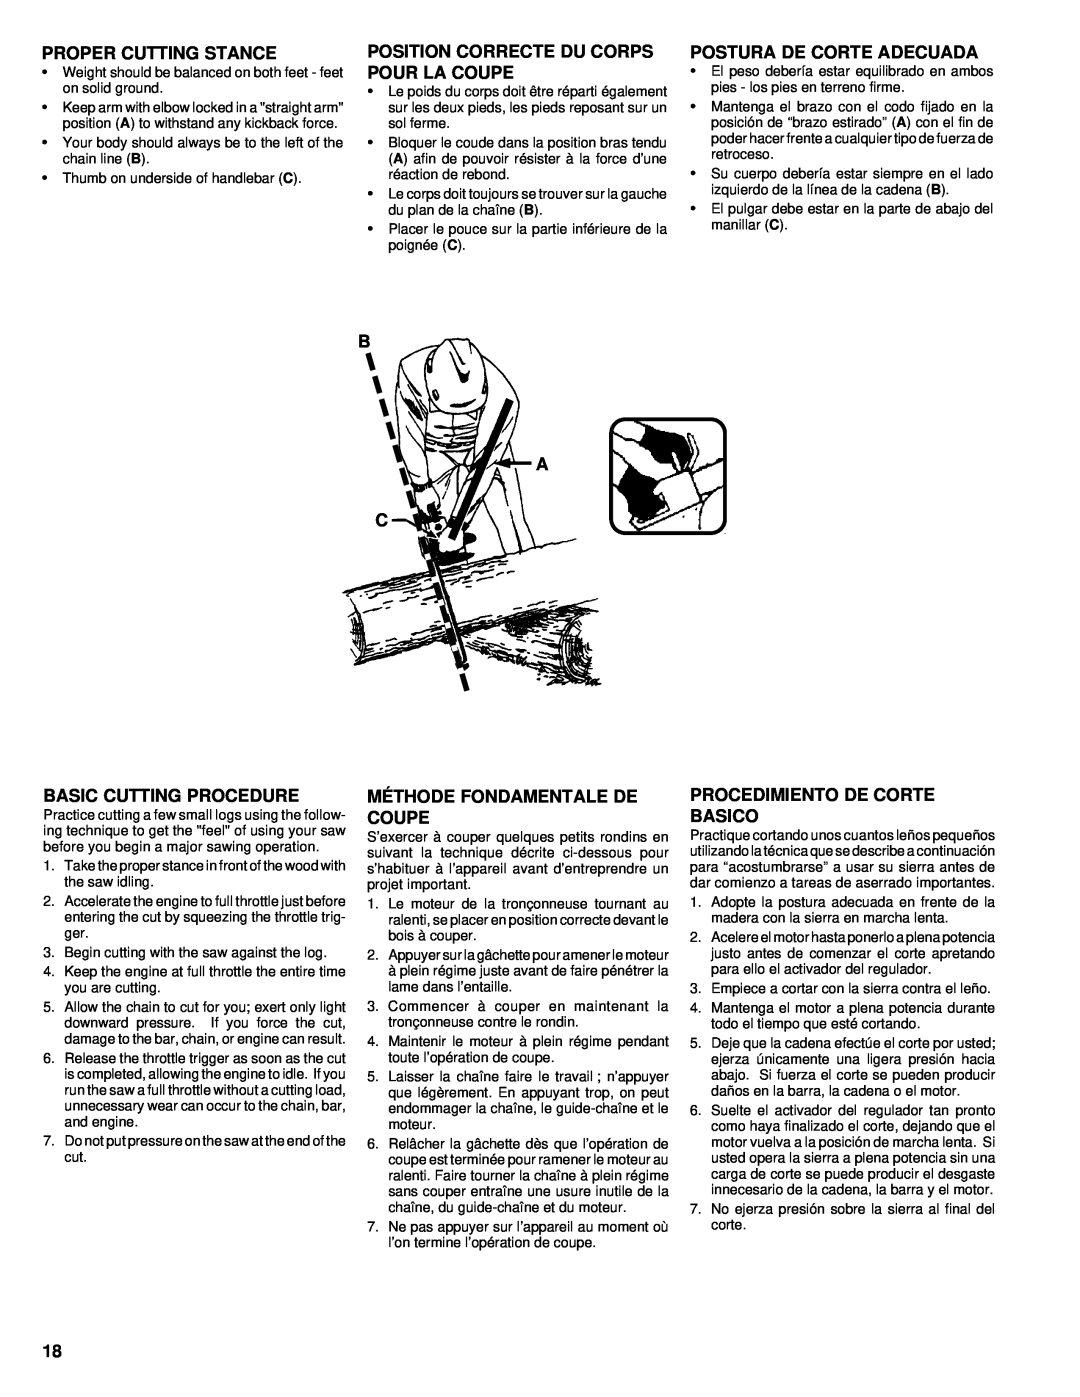 Homelite UT74020 manual Proper Cutting Stance, Position Correcte Du Corps Pour La Coupe, Postura De Corte Adecuada, B A C 